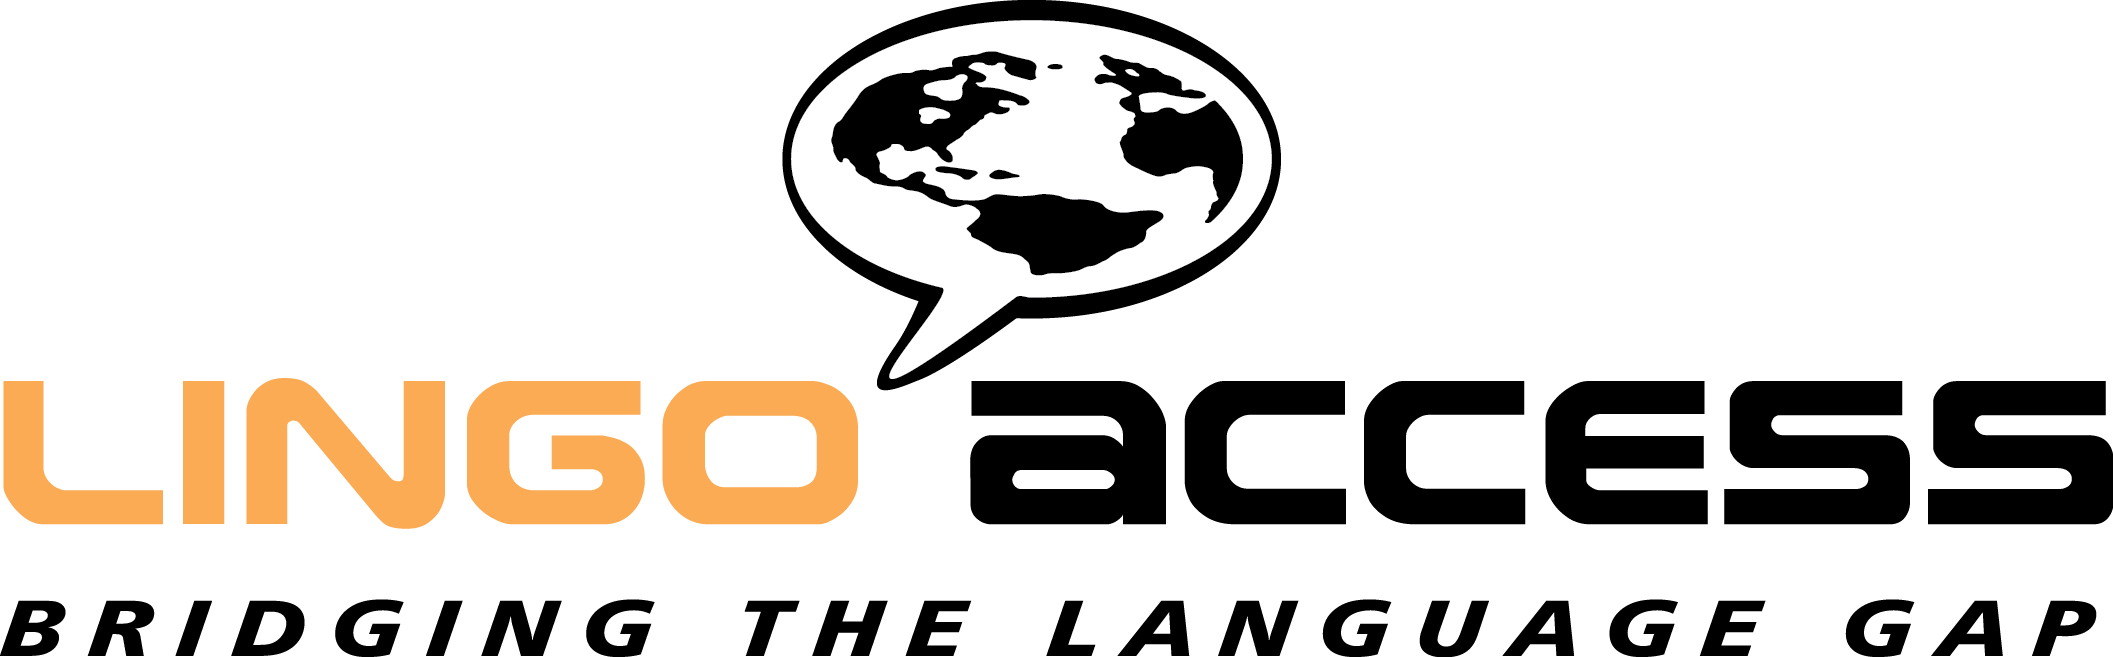 Logo Lingo Access